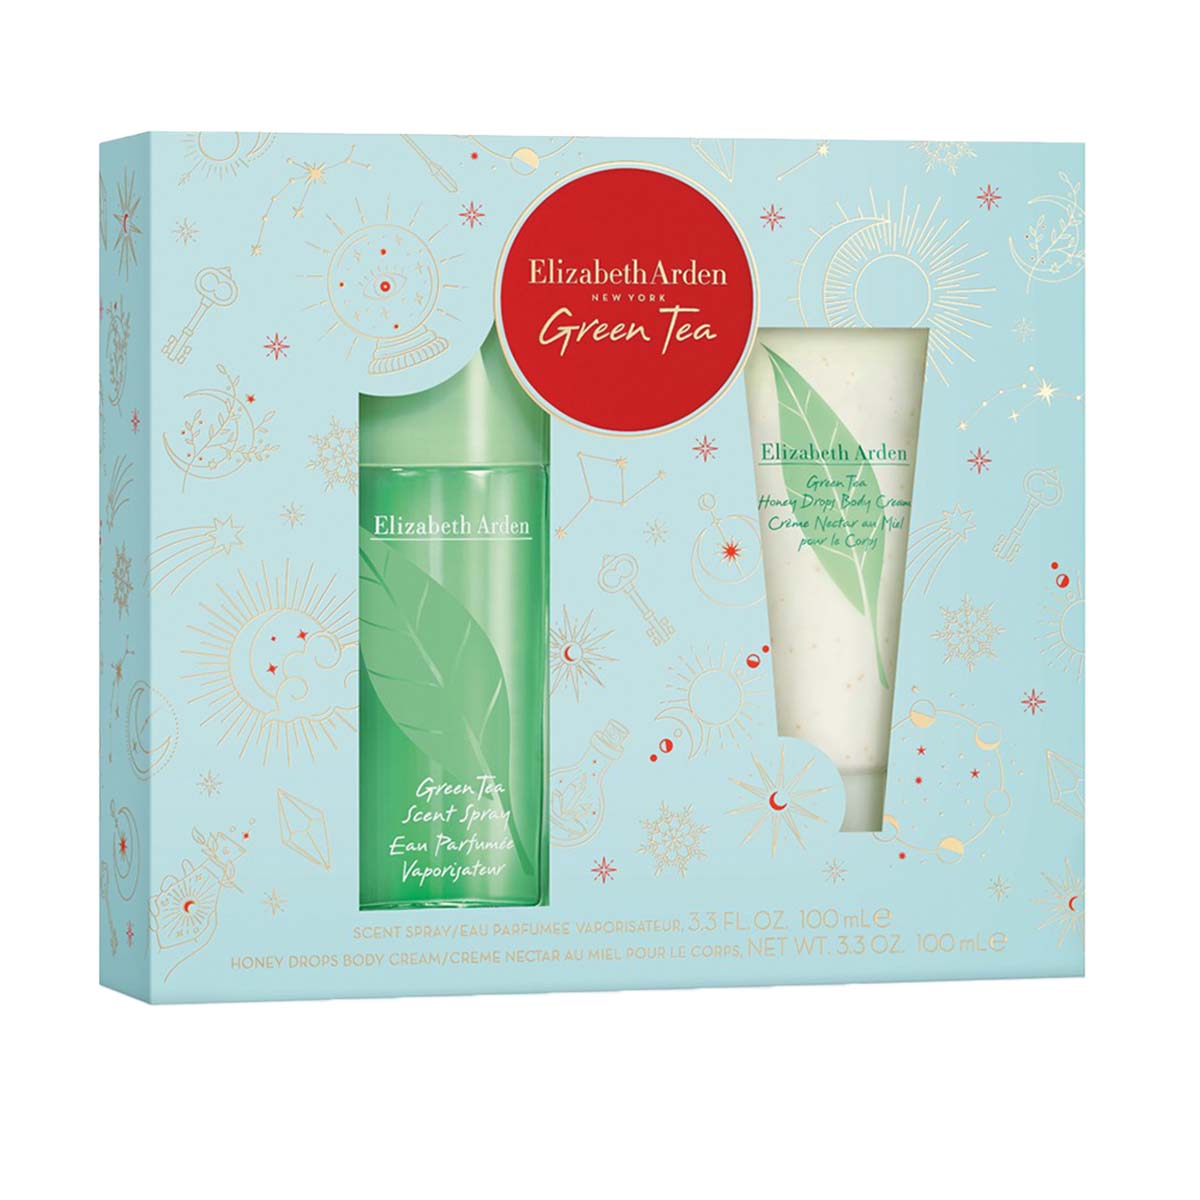 Elizabeth Arden Green Tea Eau Perfume Gift Set | My Perfume Shop Australia